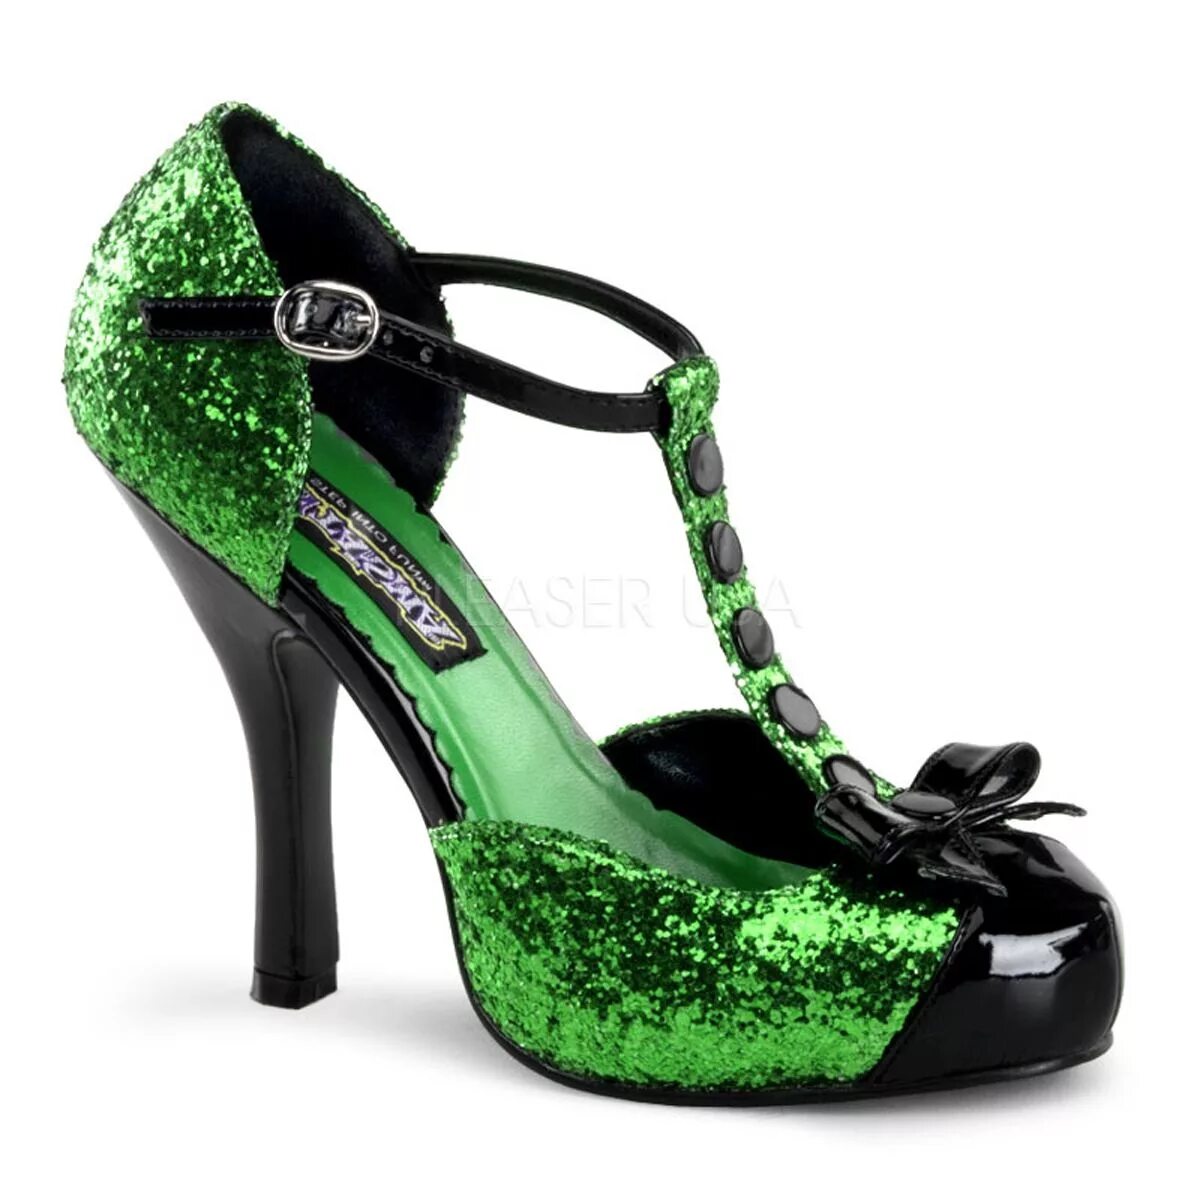 Обувь green. Зеленые туфли. Салатовые туфли. Красивые туфли. Женские зеленые туфли.